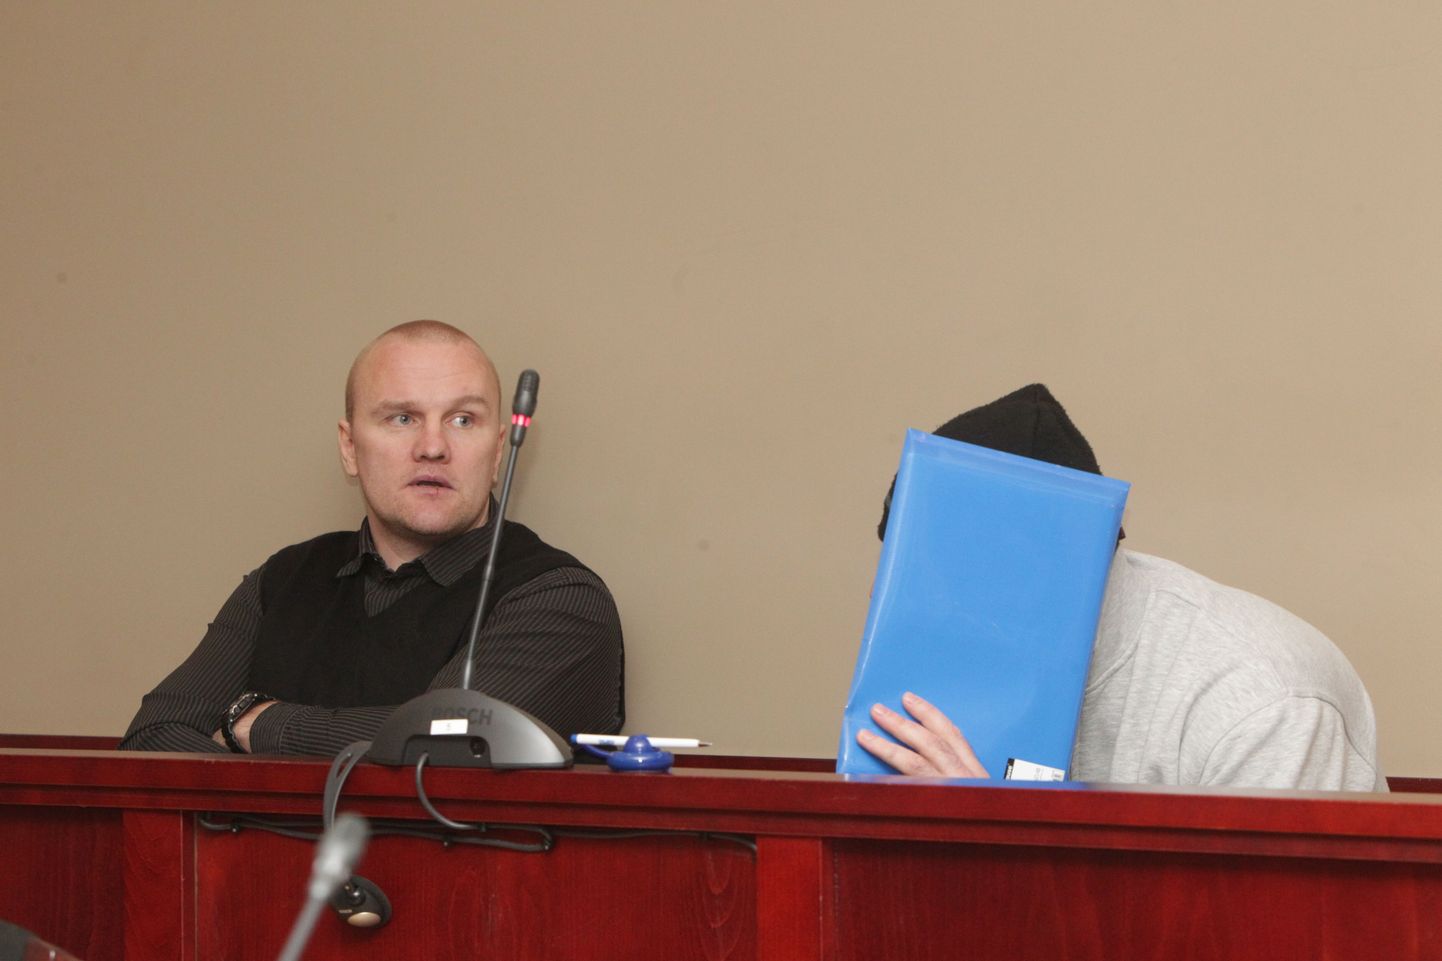 Ats Pärnaste ja oma nägu varjav mees Tartu maakohtus istungi eel. Neid süüdistati 30-aastase Silveri tapmises Tartu kesklinnas 2013. aasta 25. mai varahommikul.